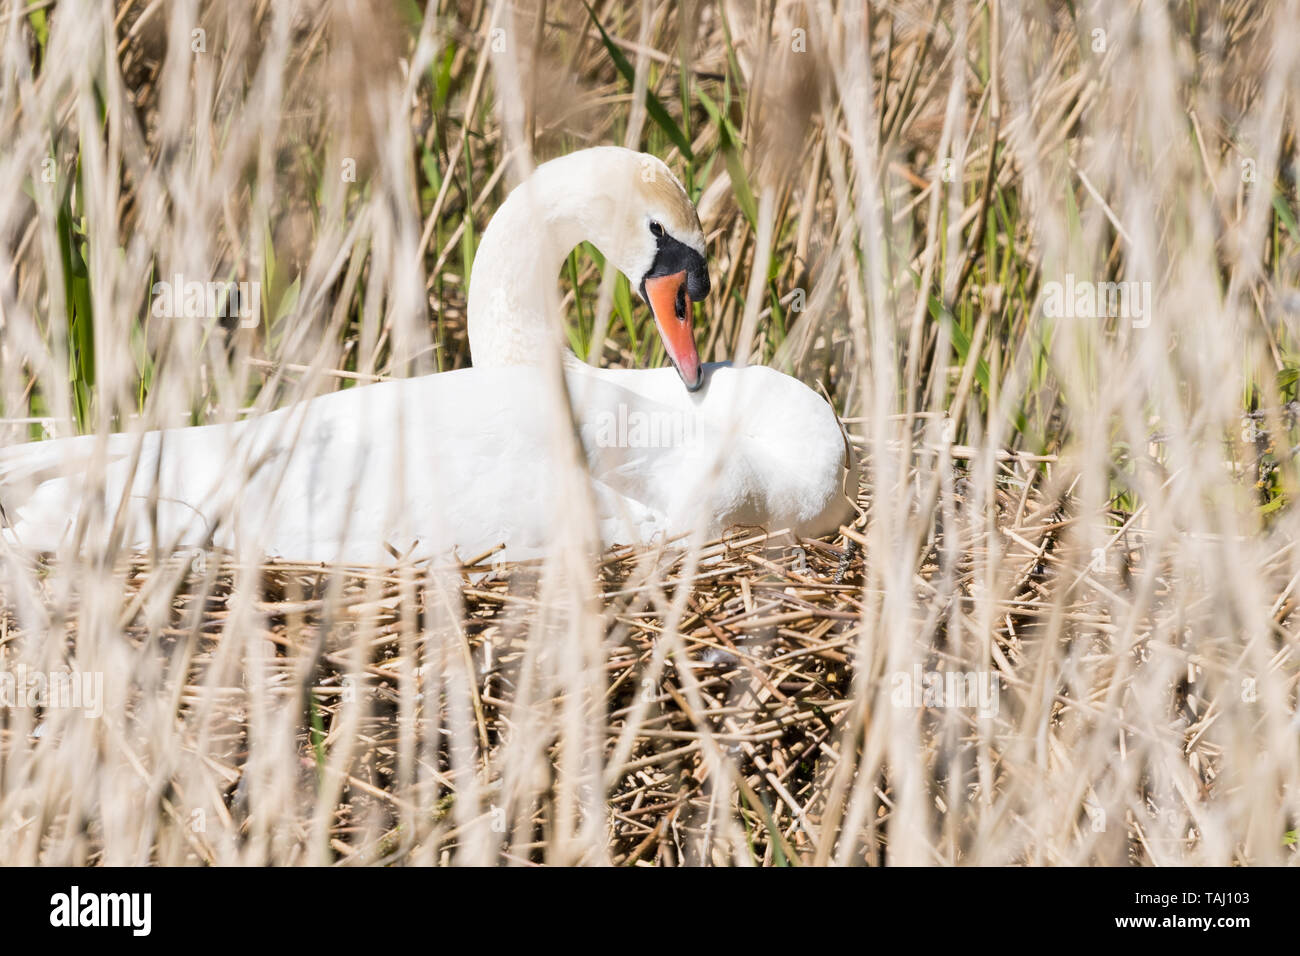 Mute swan nest - cygnus olor - nesting in reeds - UK Stock Photo